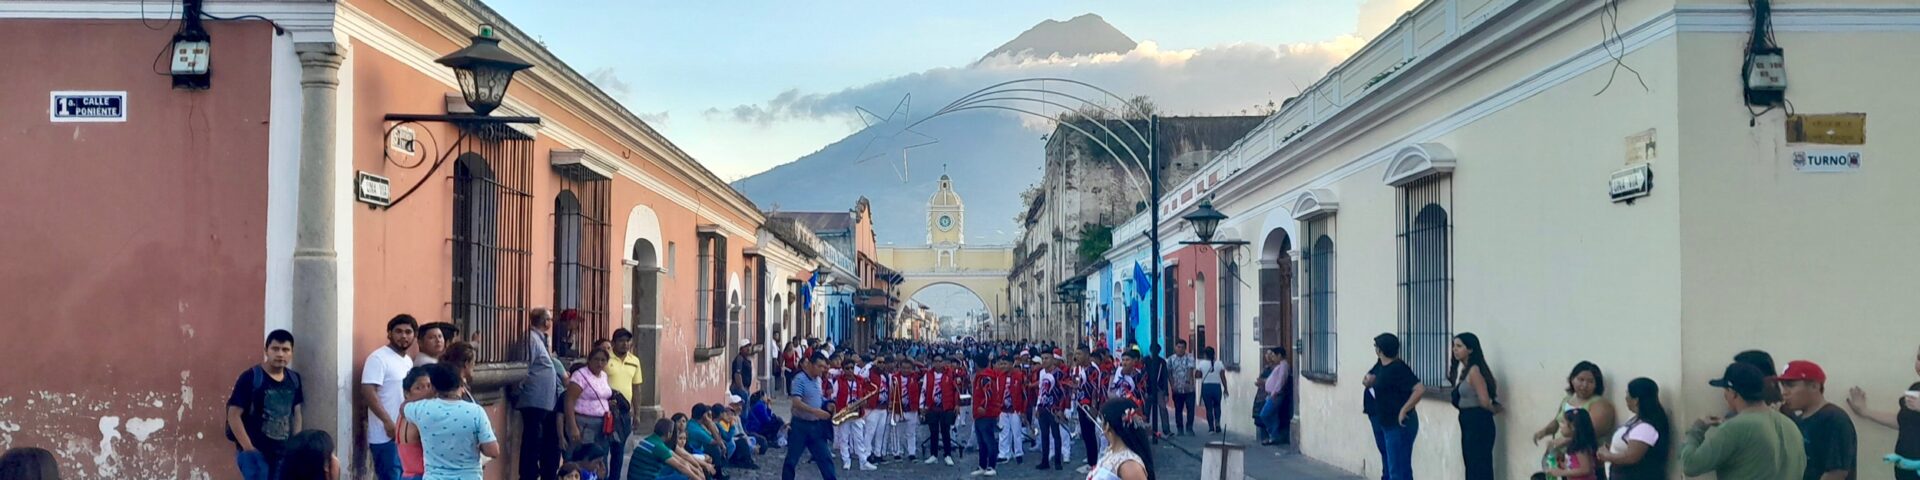 Antigua, die alte Hauptstadt Guatemalas, 2023